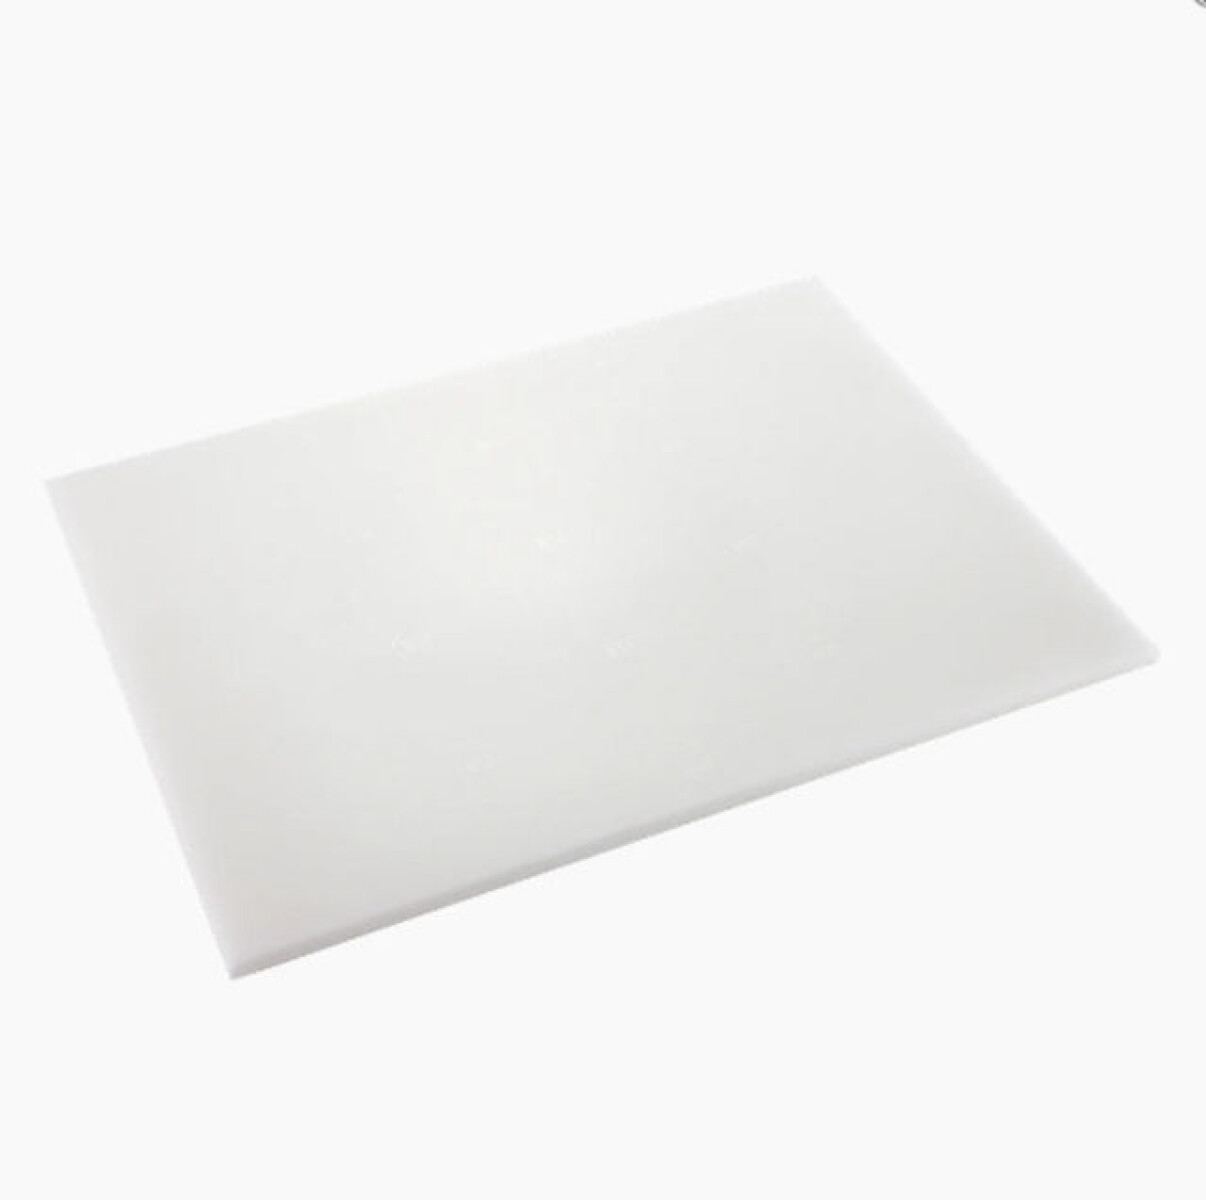 Tabla corte Blanca 30 x 45 x 2.5 cm 